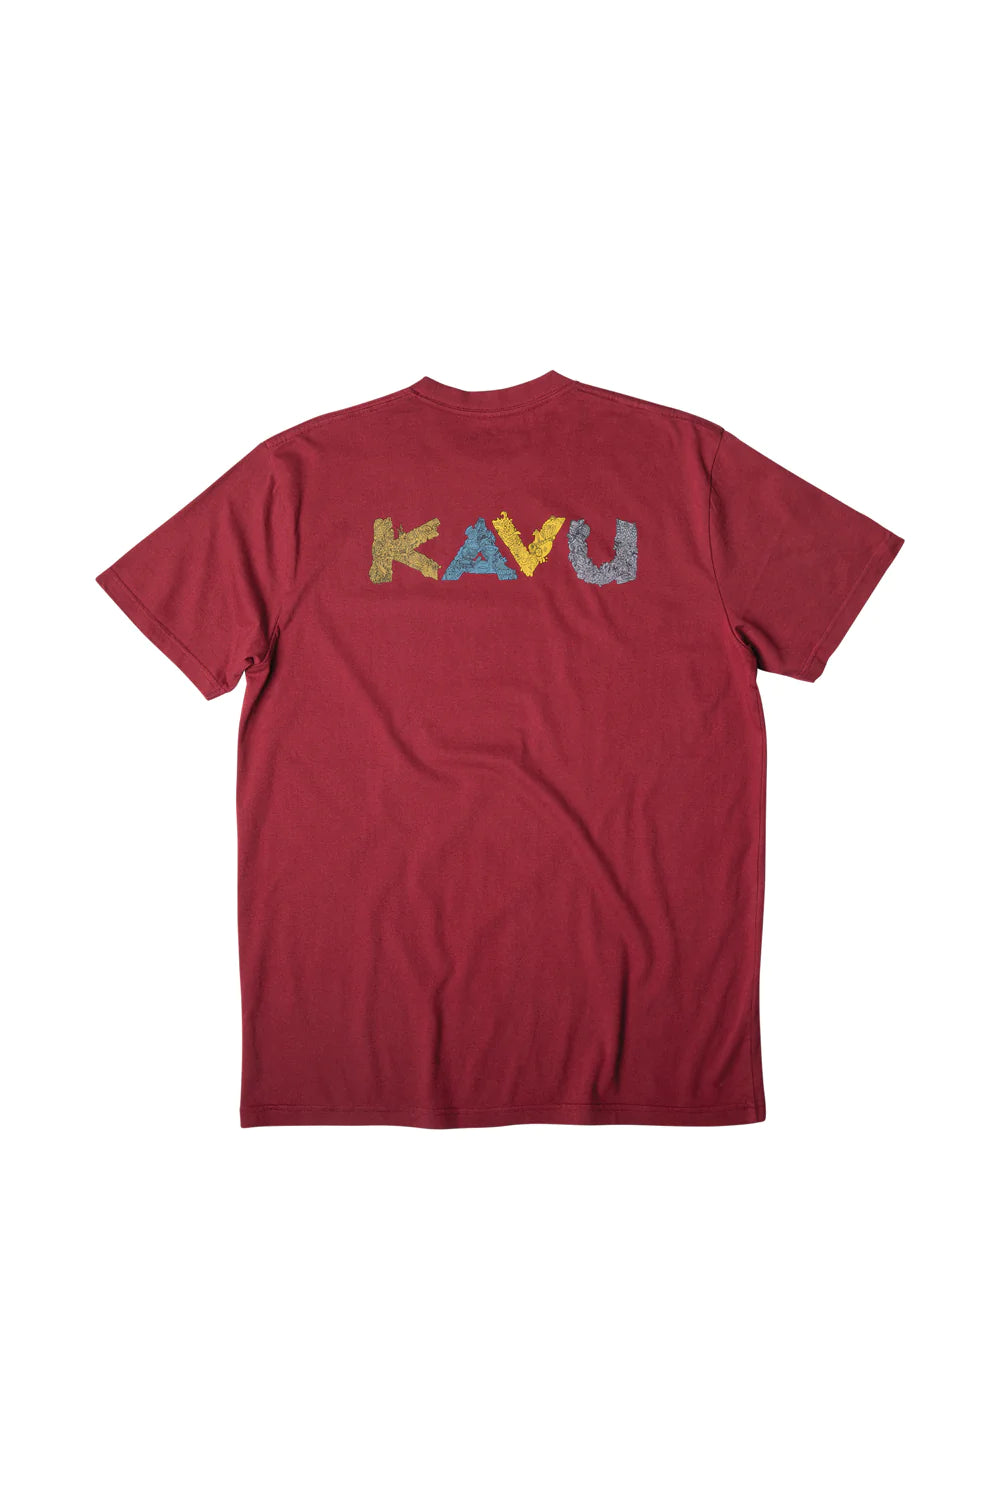 Kavu - T-Shirt Doodle Days Pont